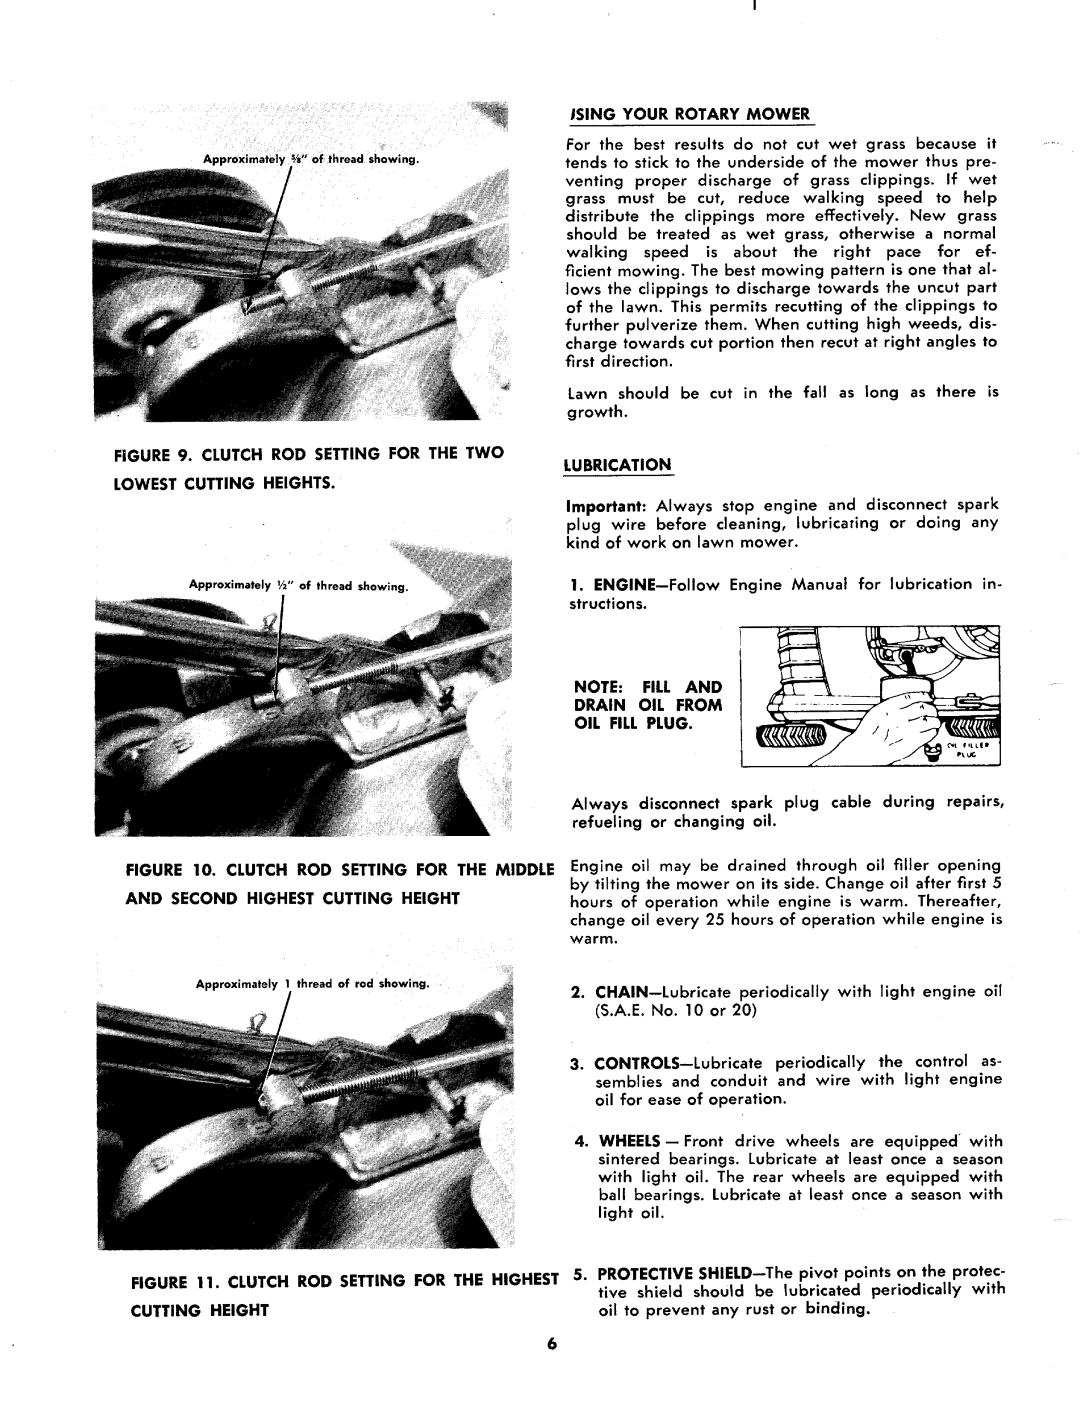 MTD 124-688A manual 